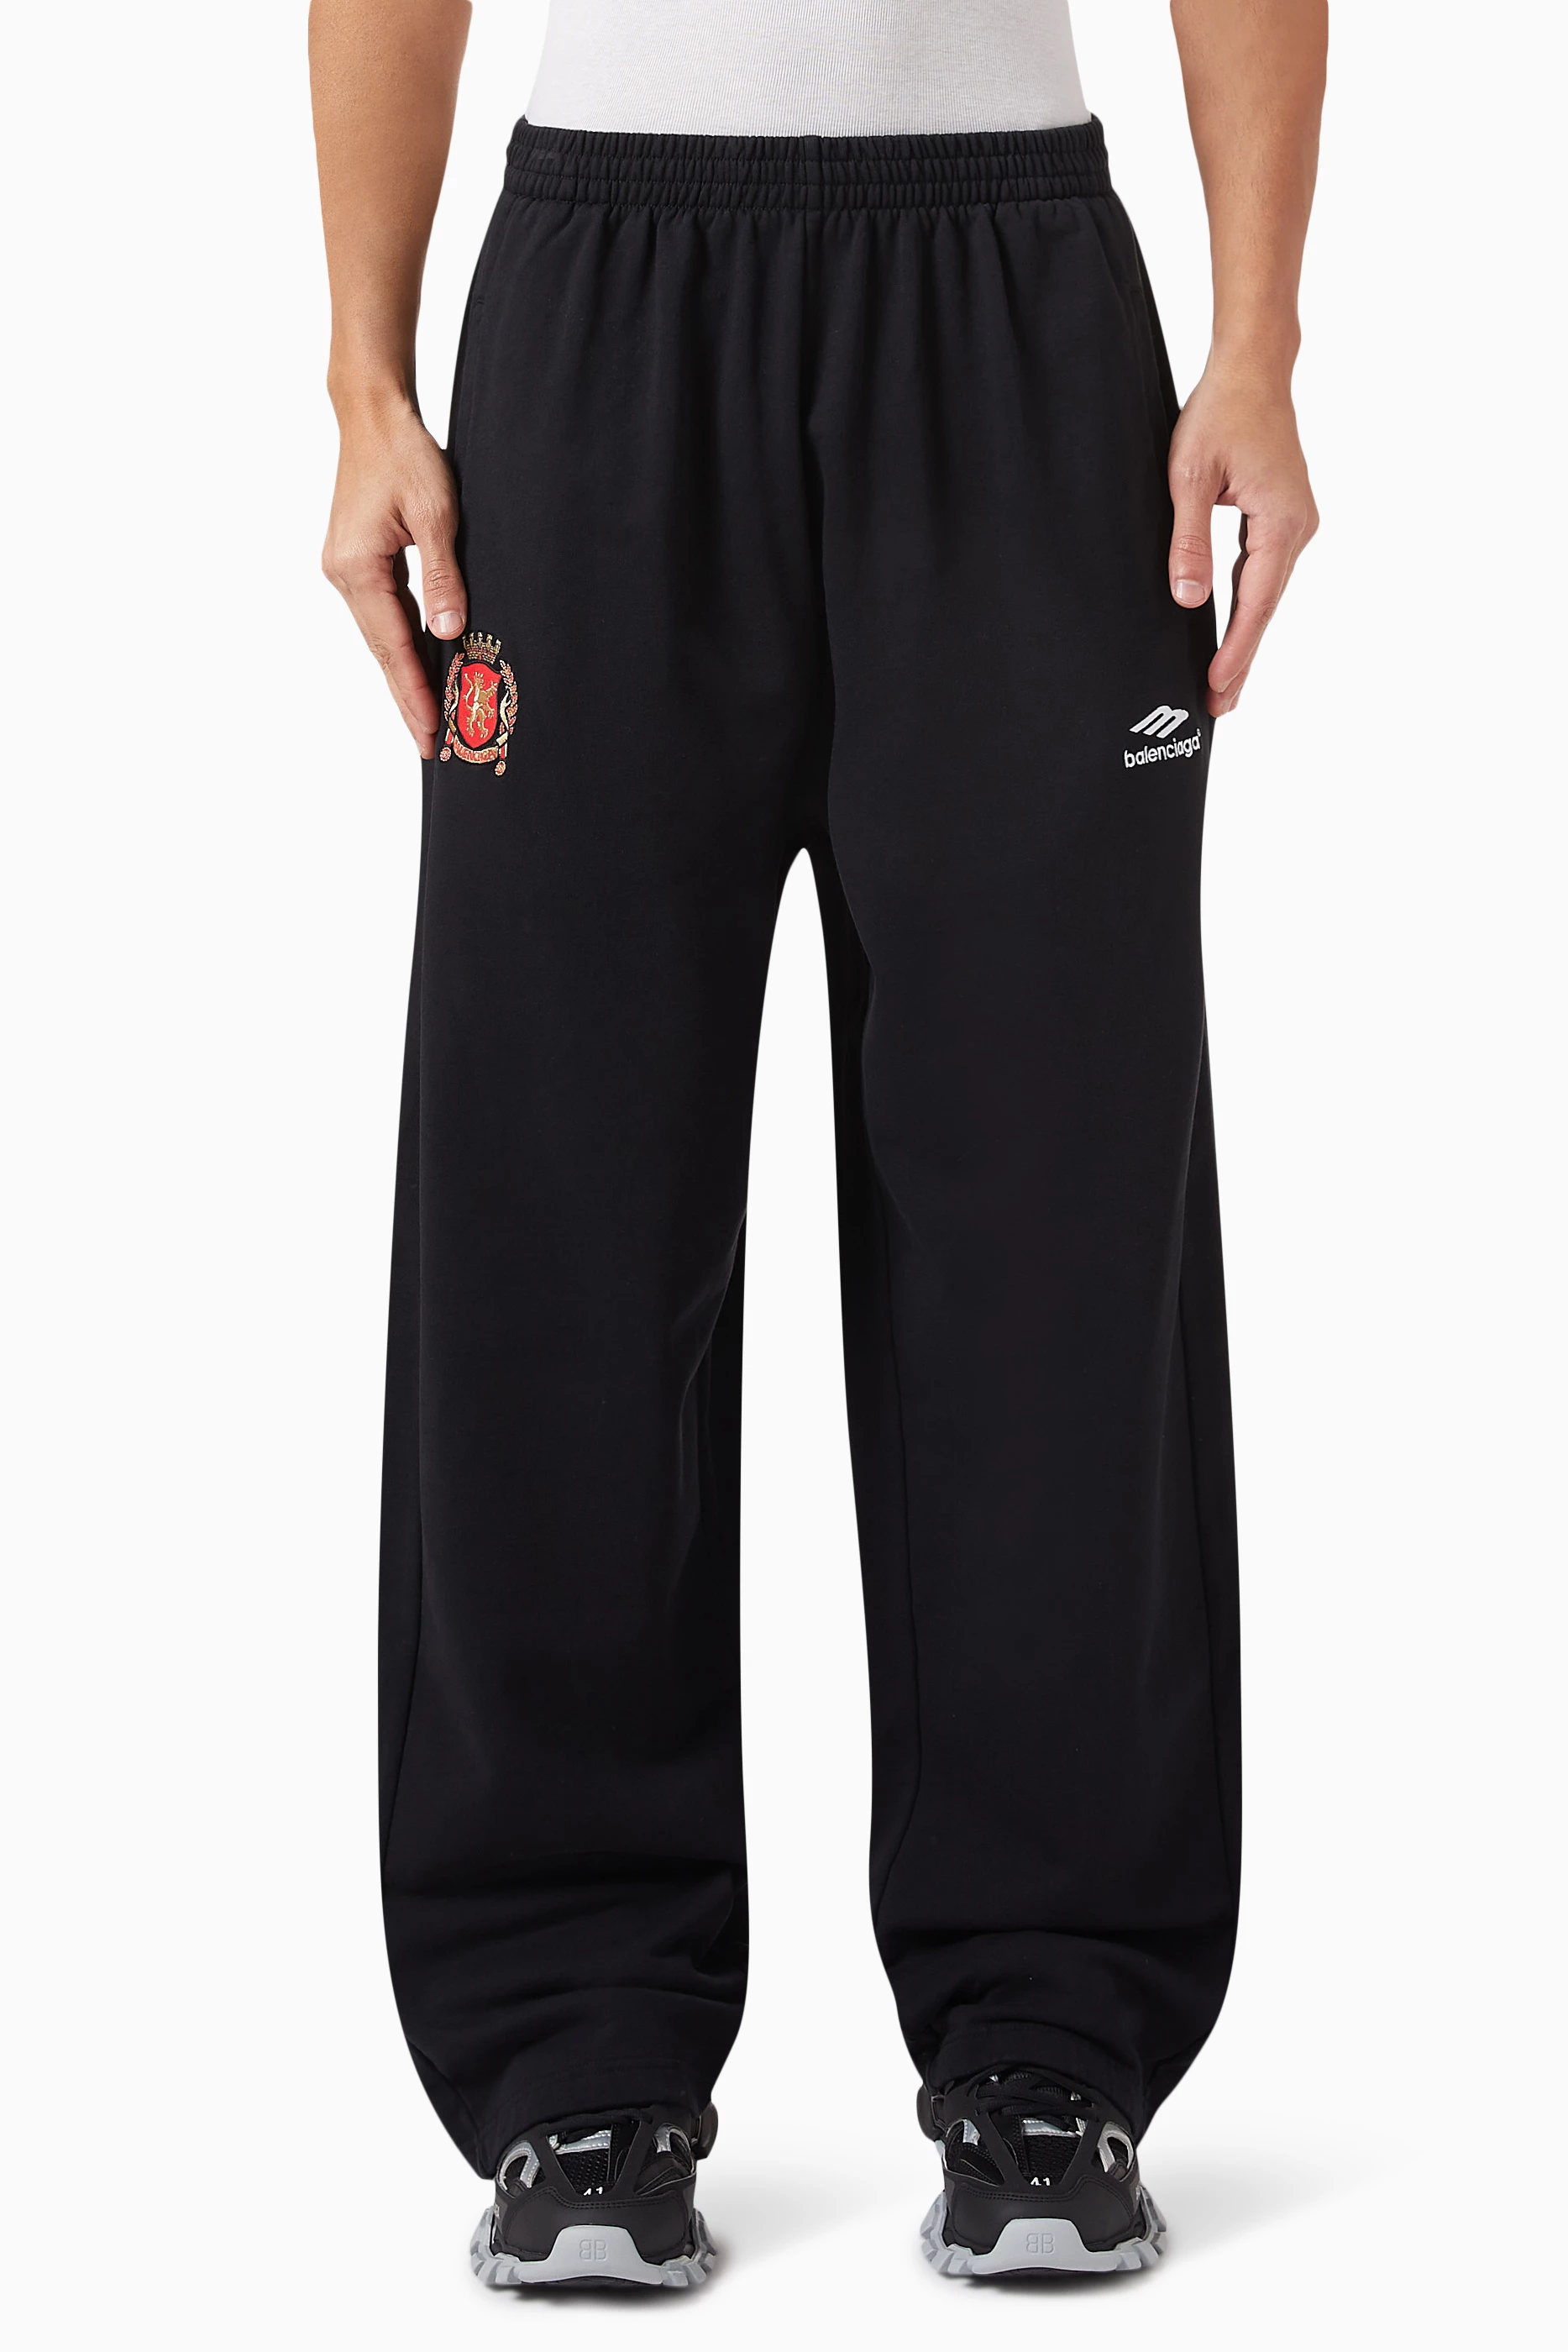 Buy Balenciaga Black Baggy Sweatpants in Heavy Fleece for Men in Kuwait